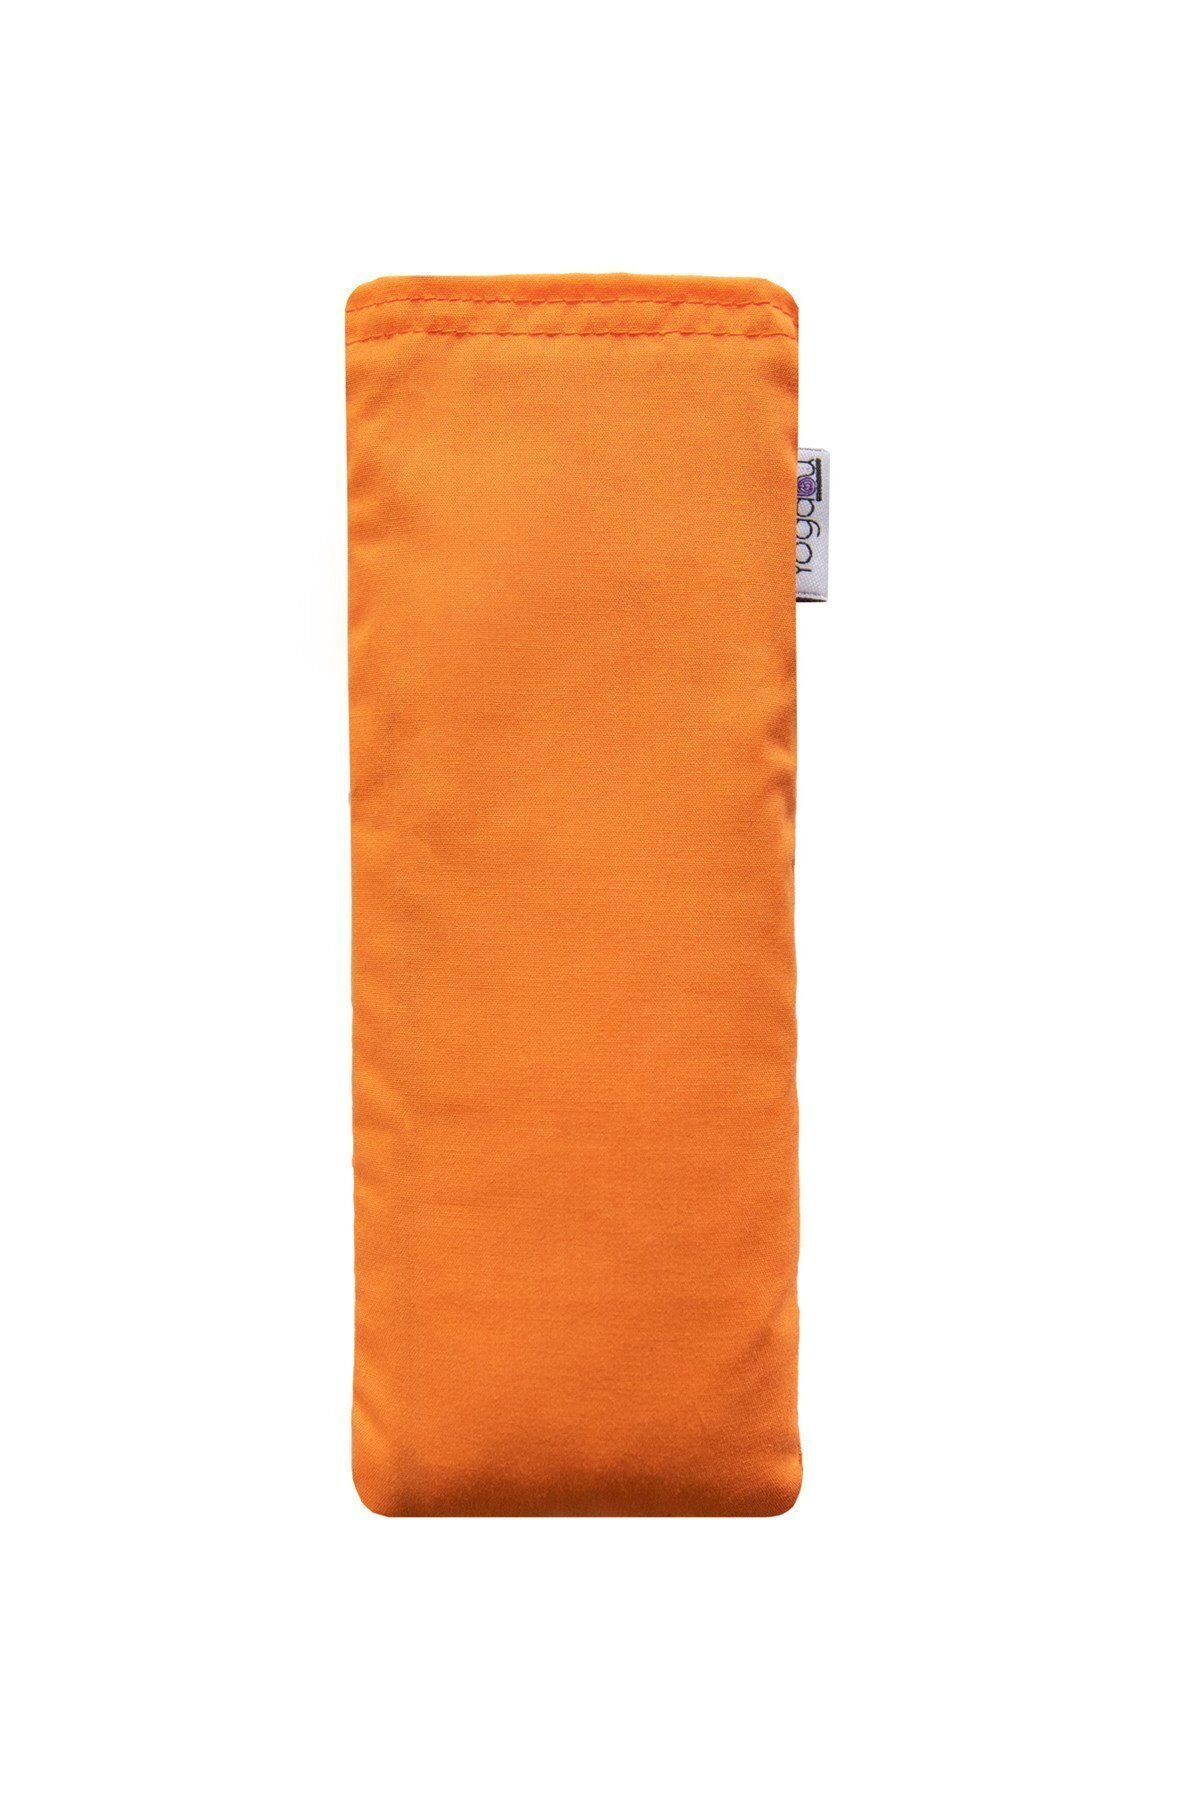 Yogabu Göz Yastığı-turuncu